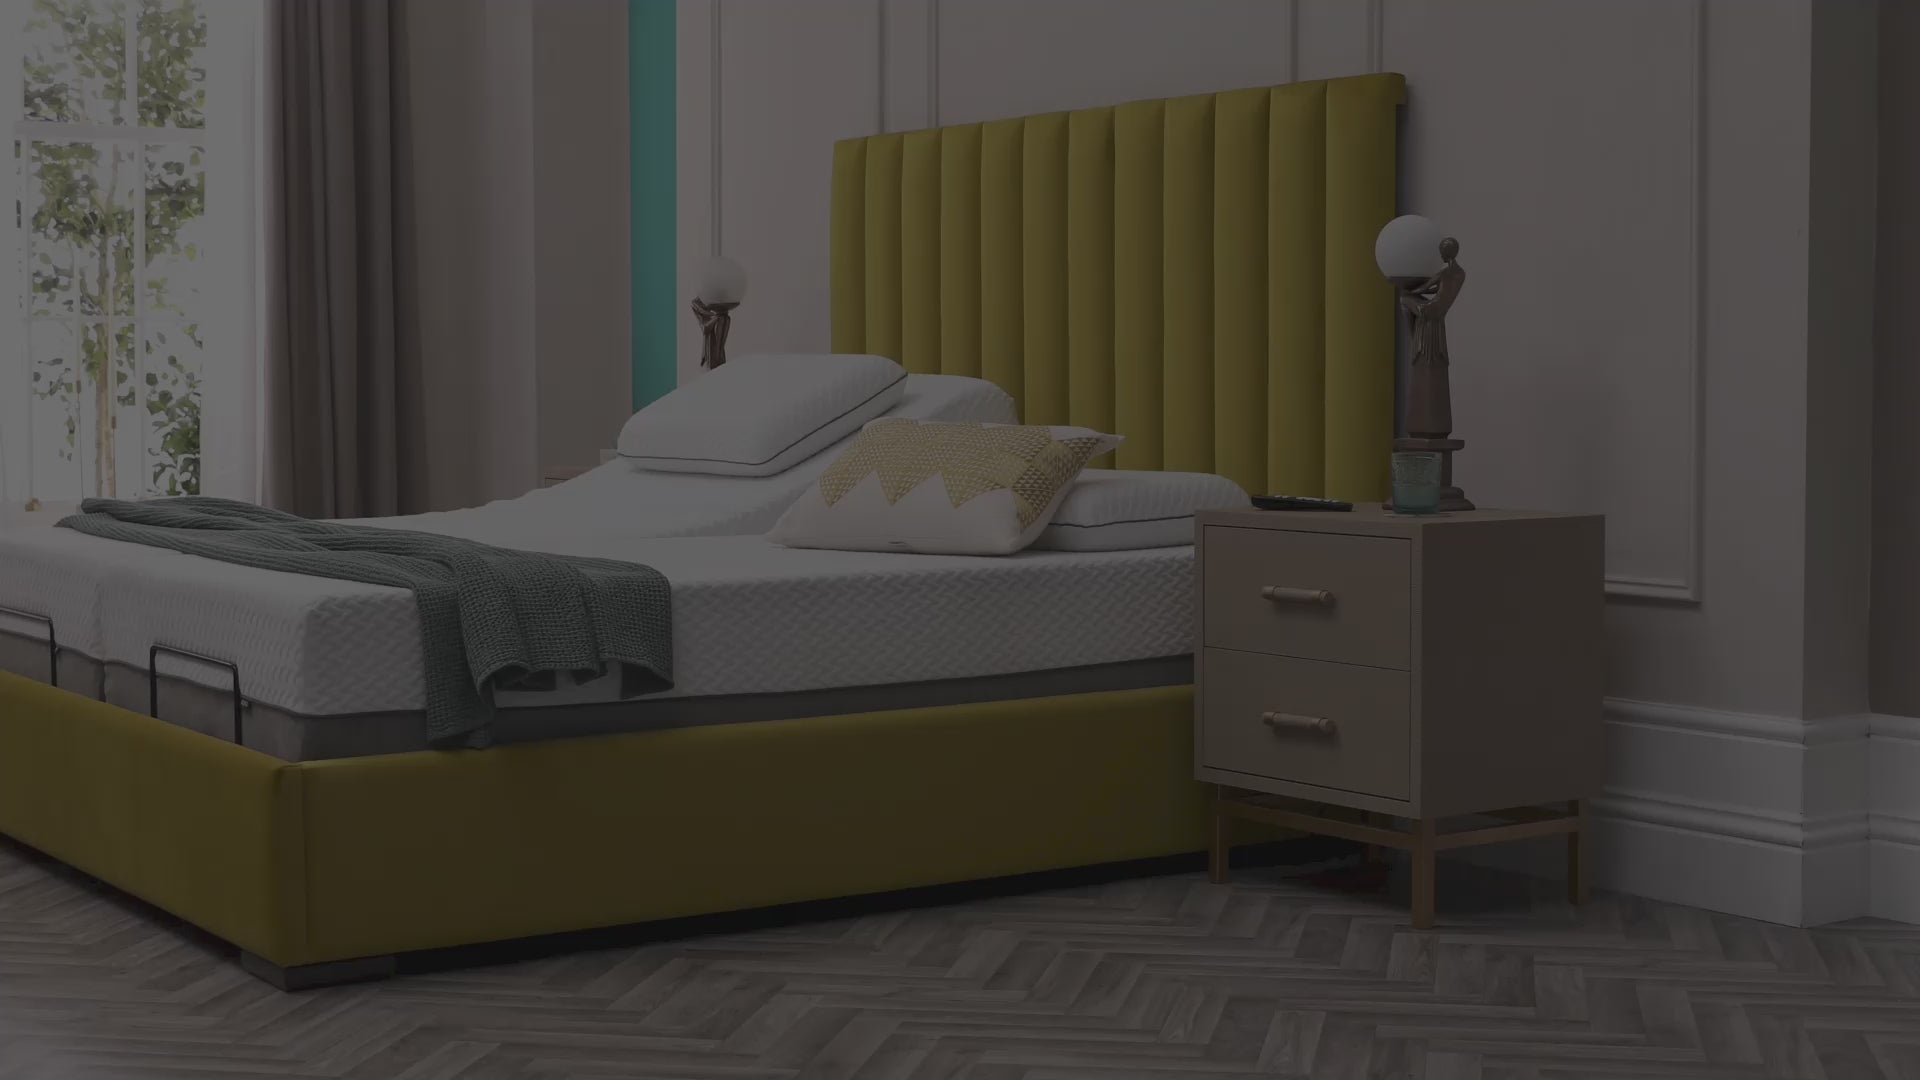 The Versaillescta in the biscuit velvet bed in a bedroom setting